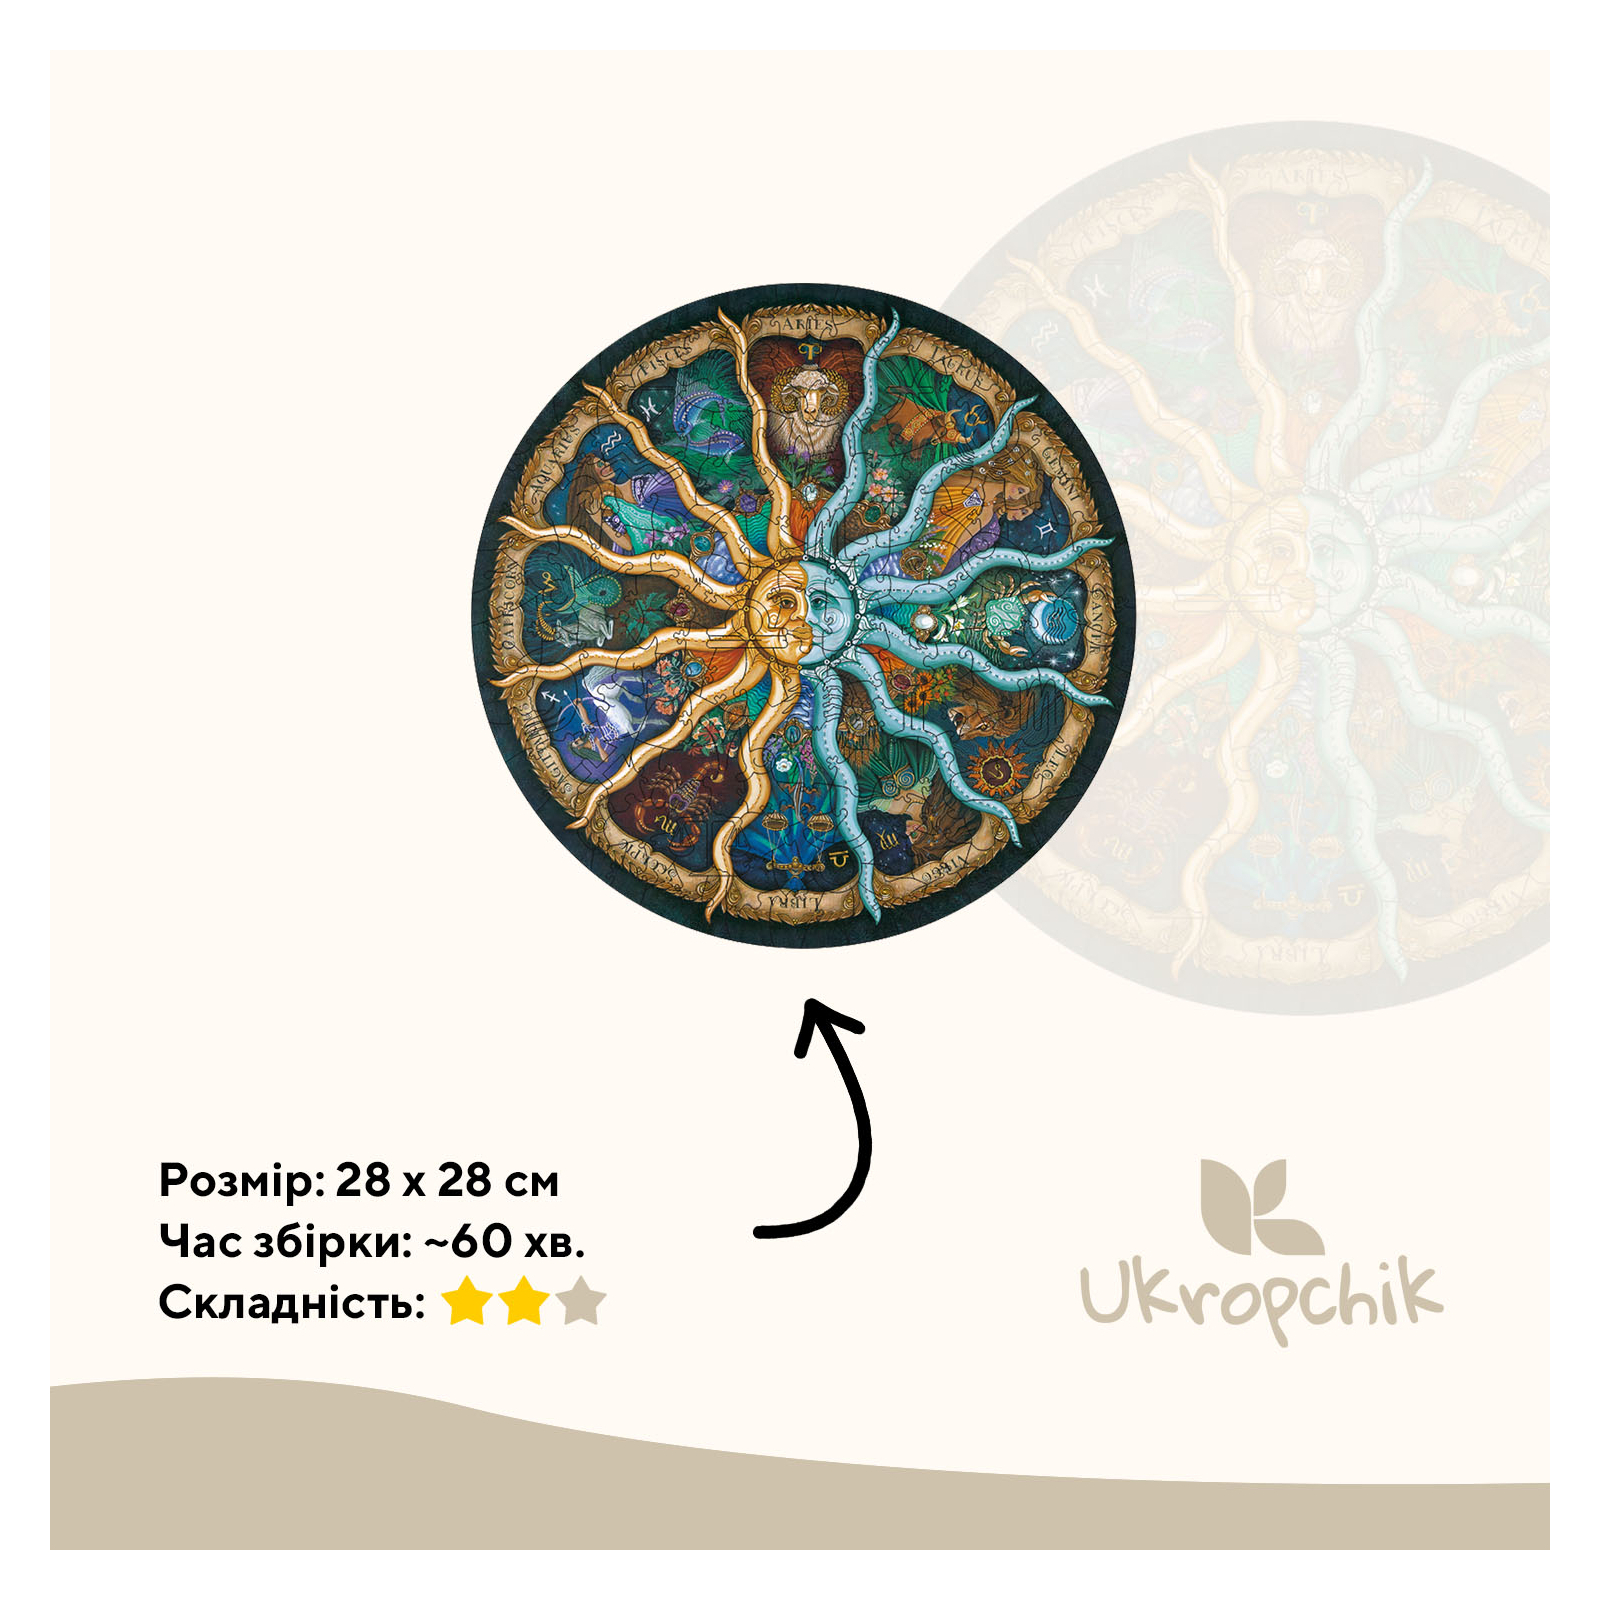 Пазл Ukropchik дерев'яний Таємничий Зодіак size - L в коробці з набором-рамкою (Mysterious Zodiac A3) зображення 2